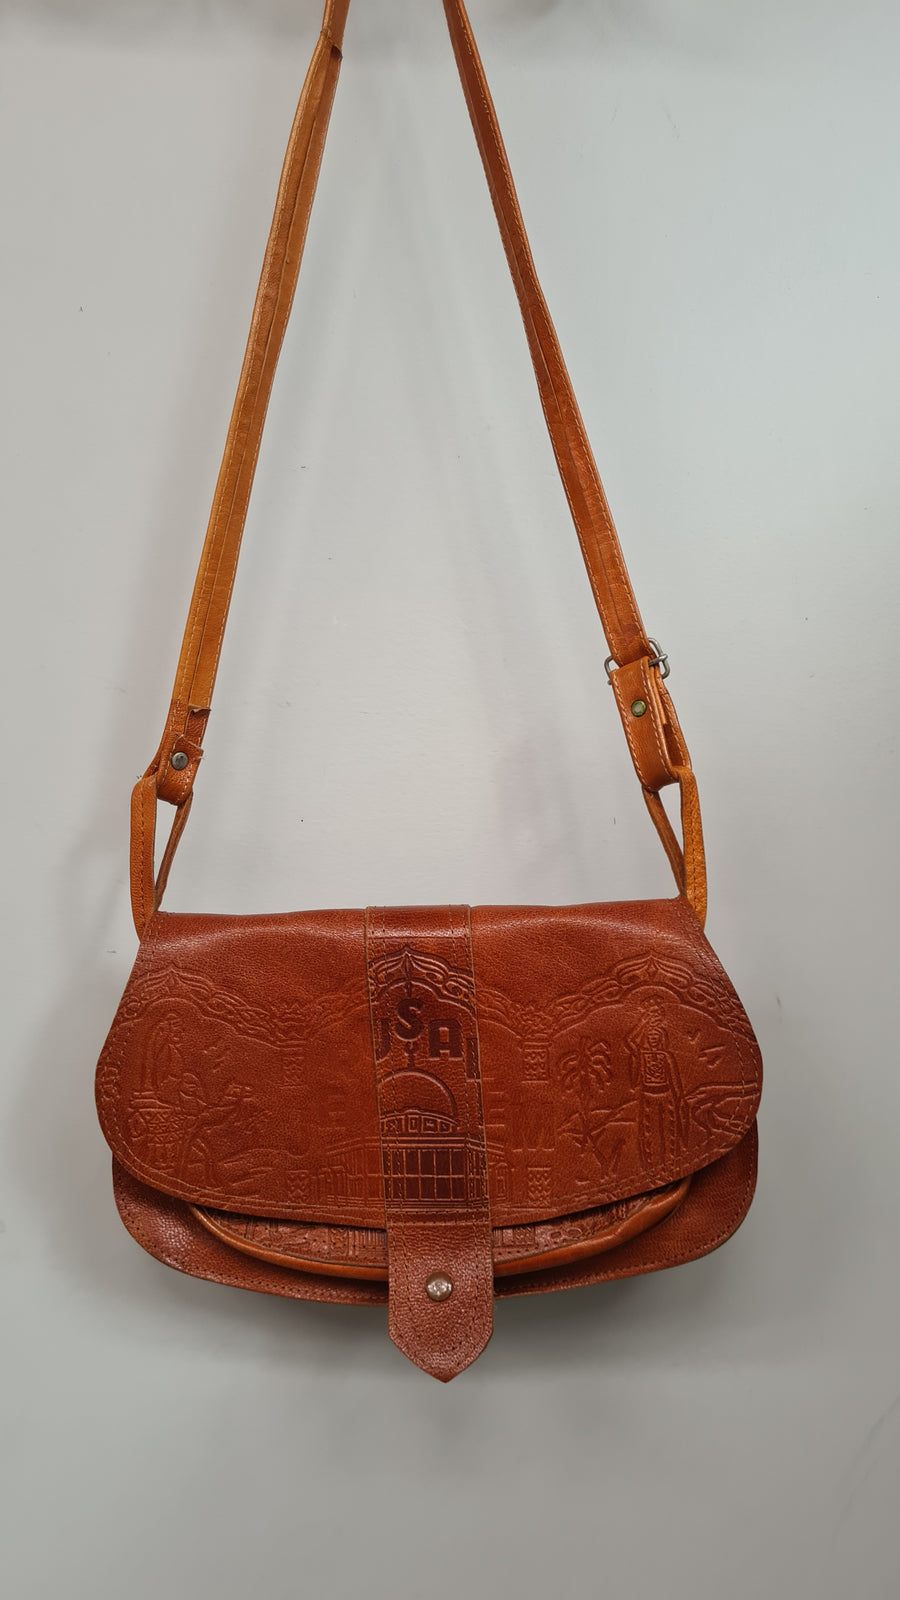 Tan leather bag